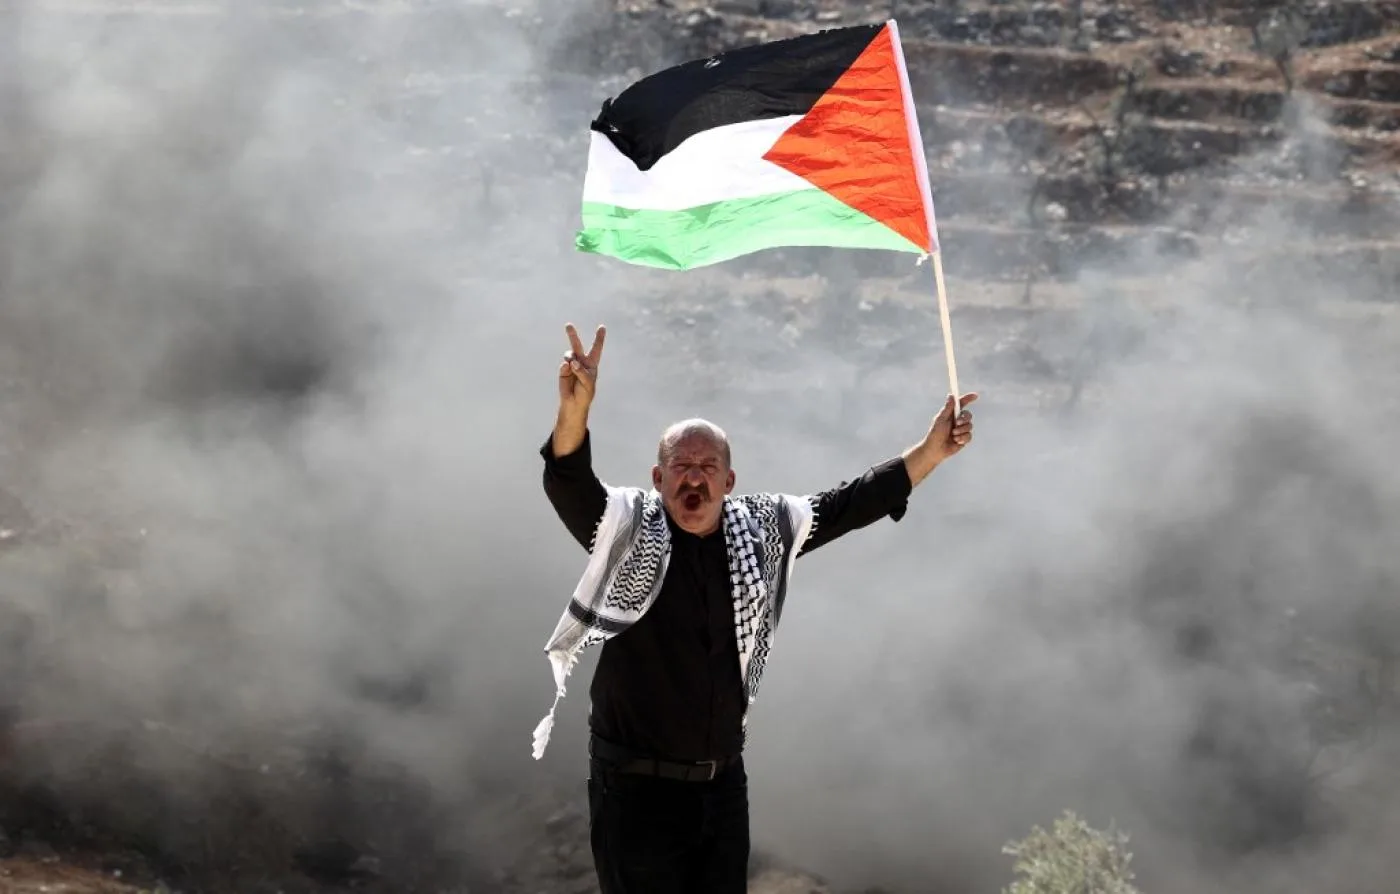 فلسطينيون يتظاهرون في الضفة الغربية المحتلة يوم 15 أكتوبر /تشرين الأول 2021